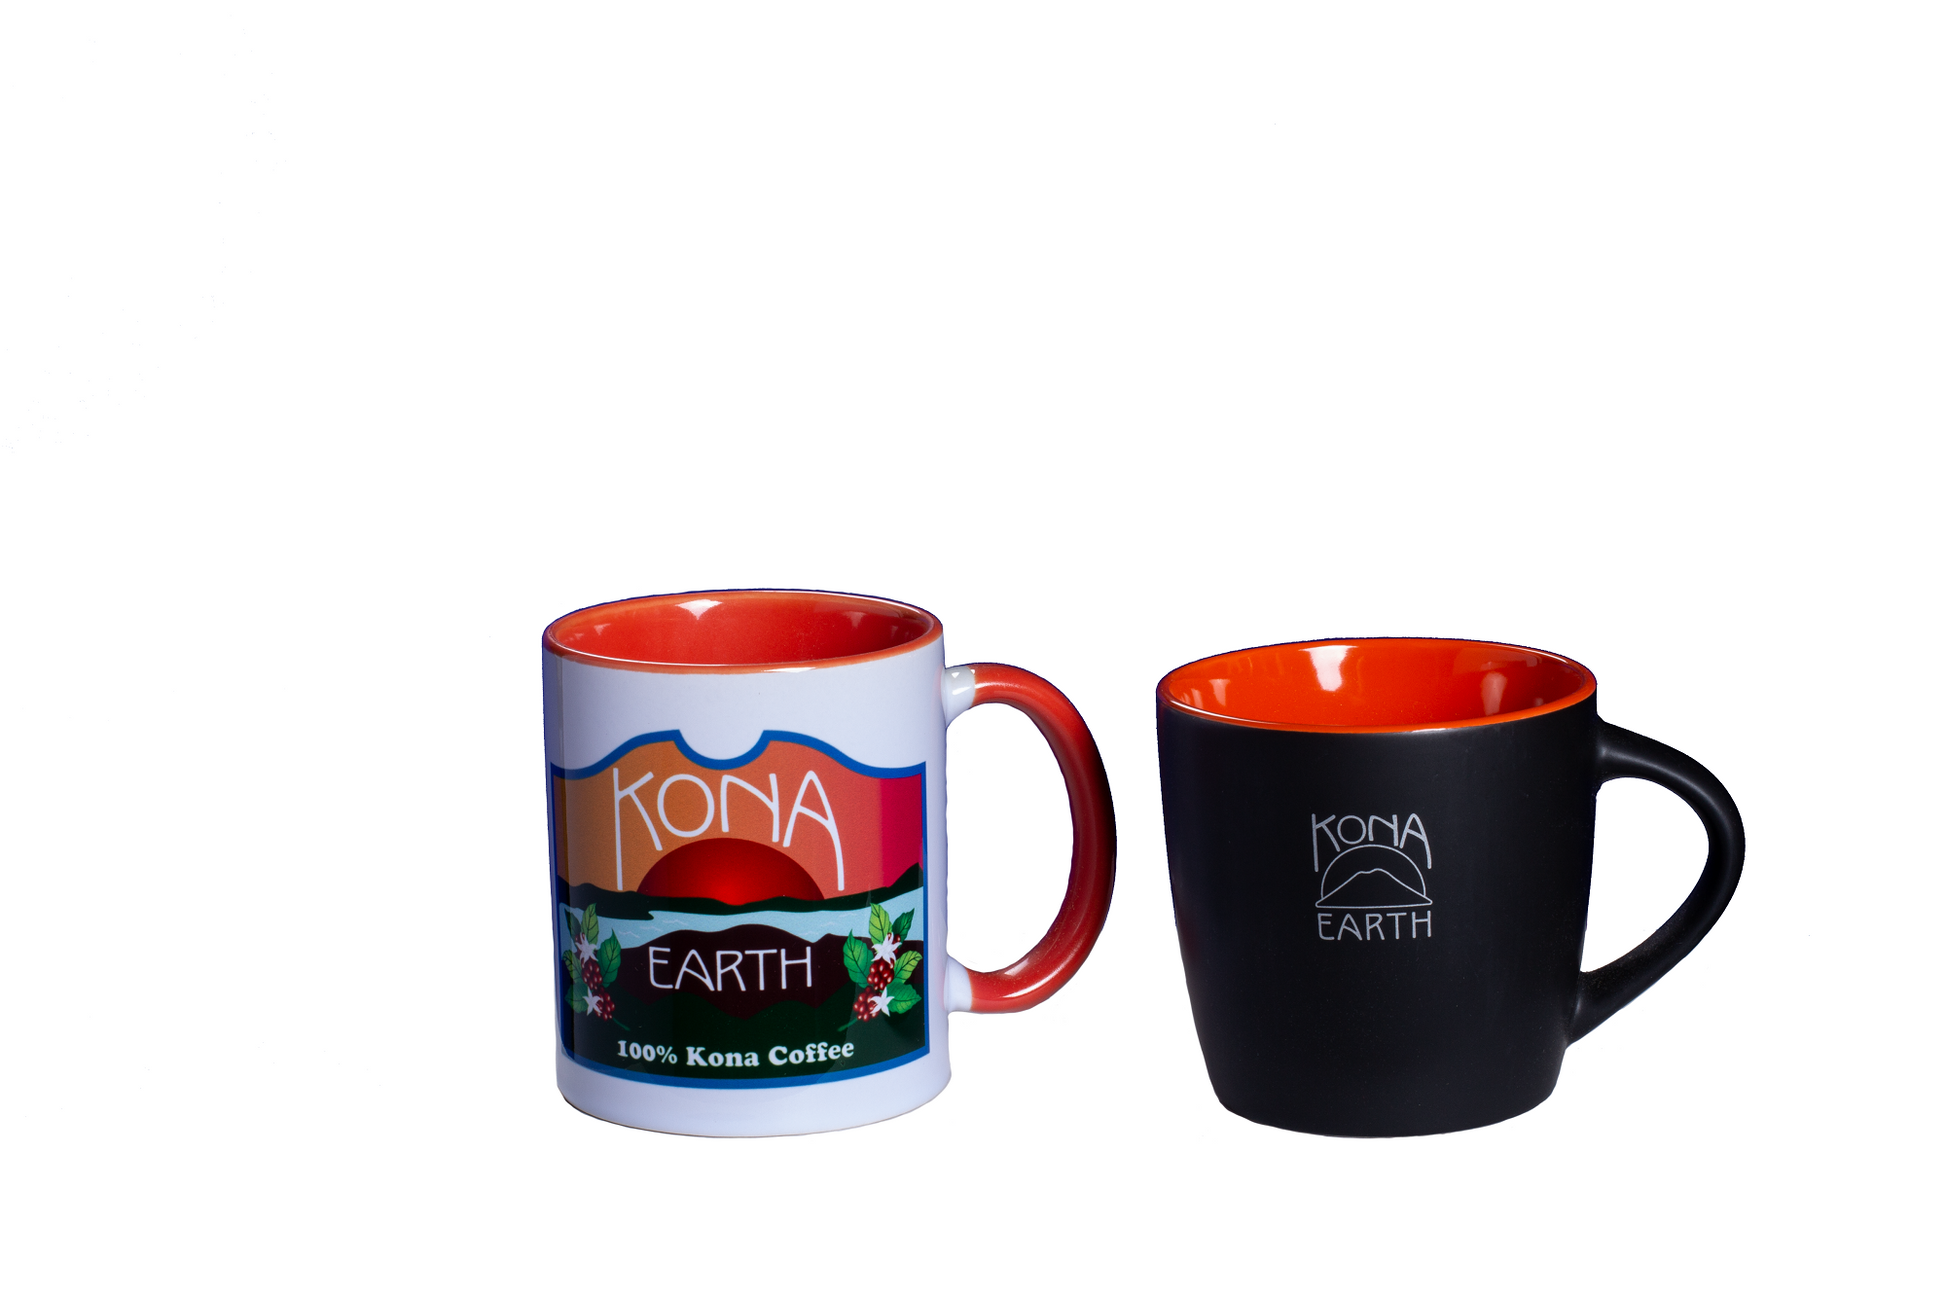 2 Kona Earth mugs